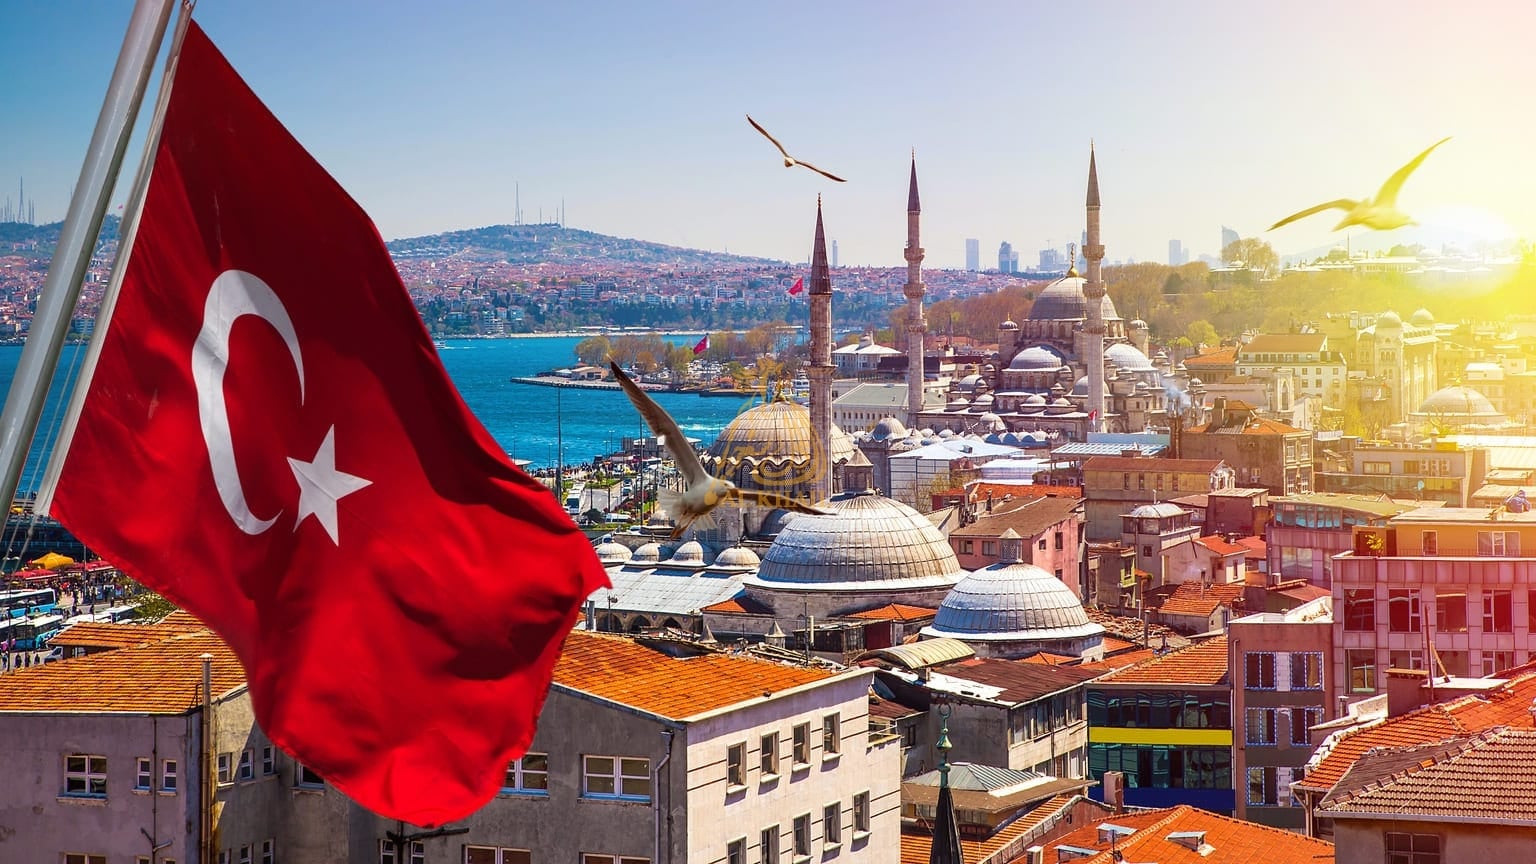 Все, что вам нужно знать о покупке недвижимости в Турции в качестве иностранца